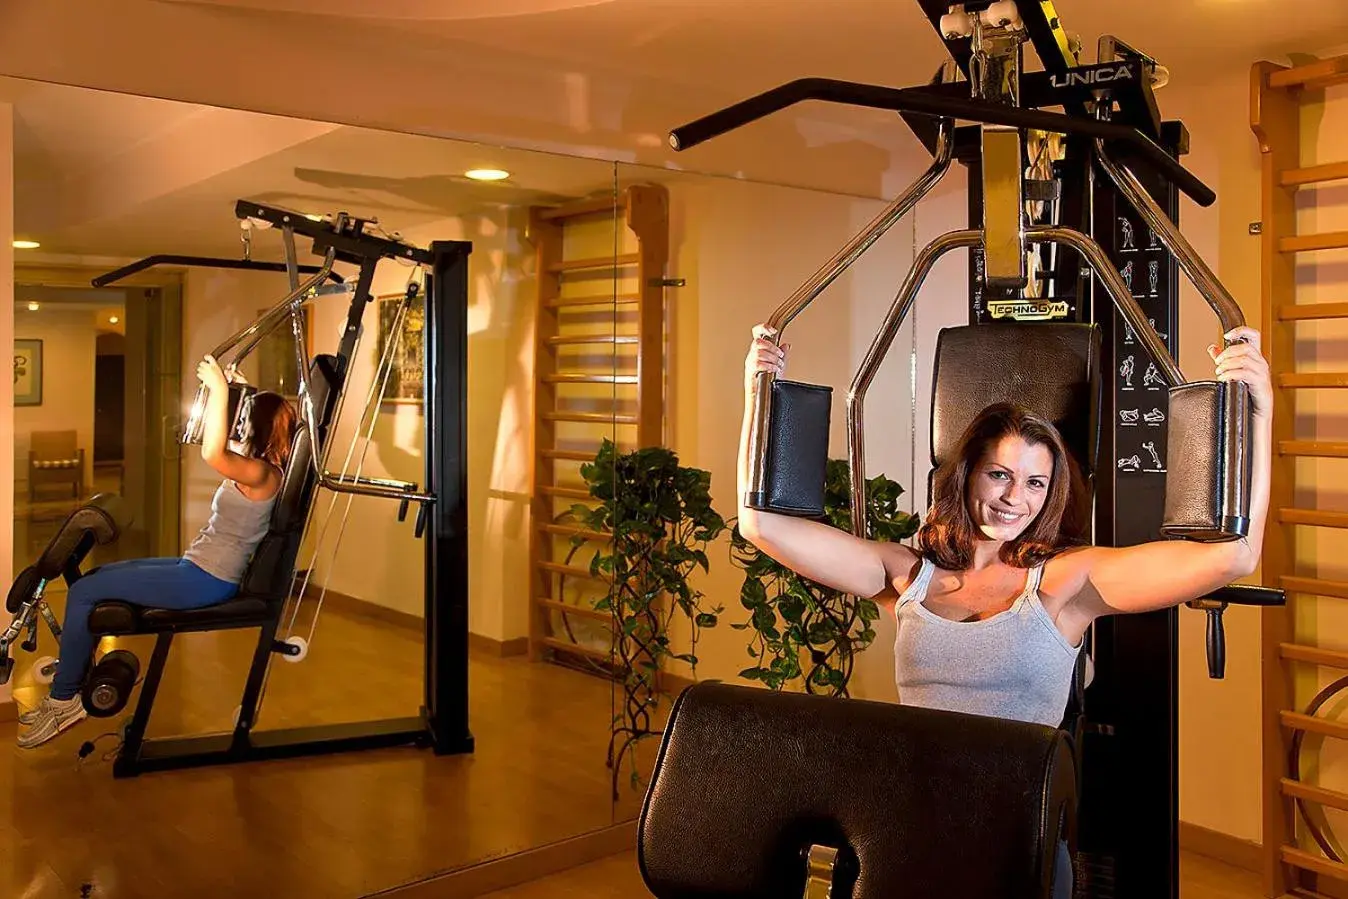 Fitness centre/facilities, Fitness Center/Facilities in Grand Hotel Il Moresco